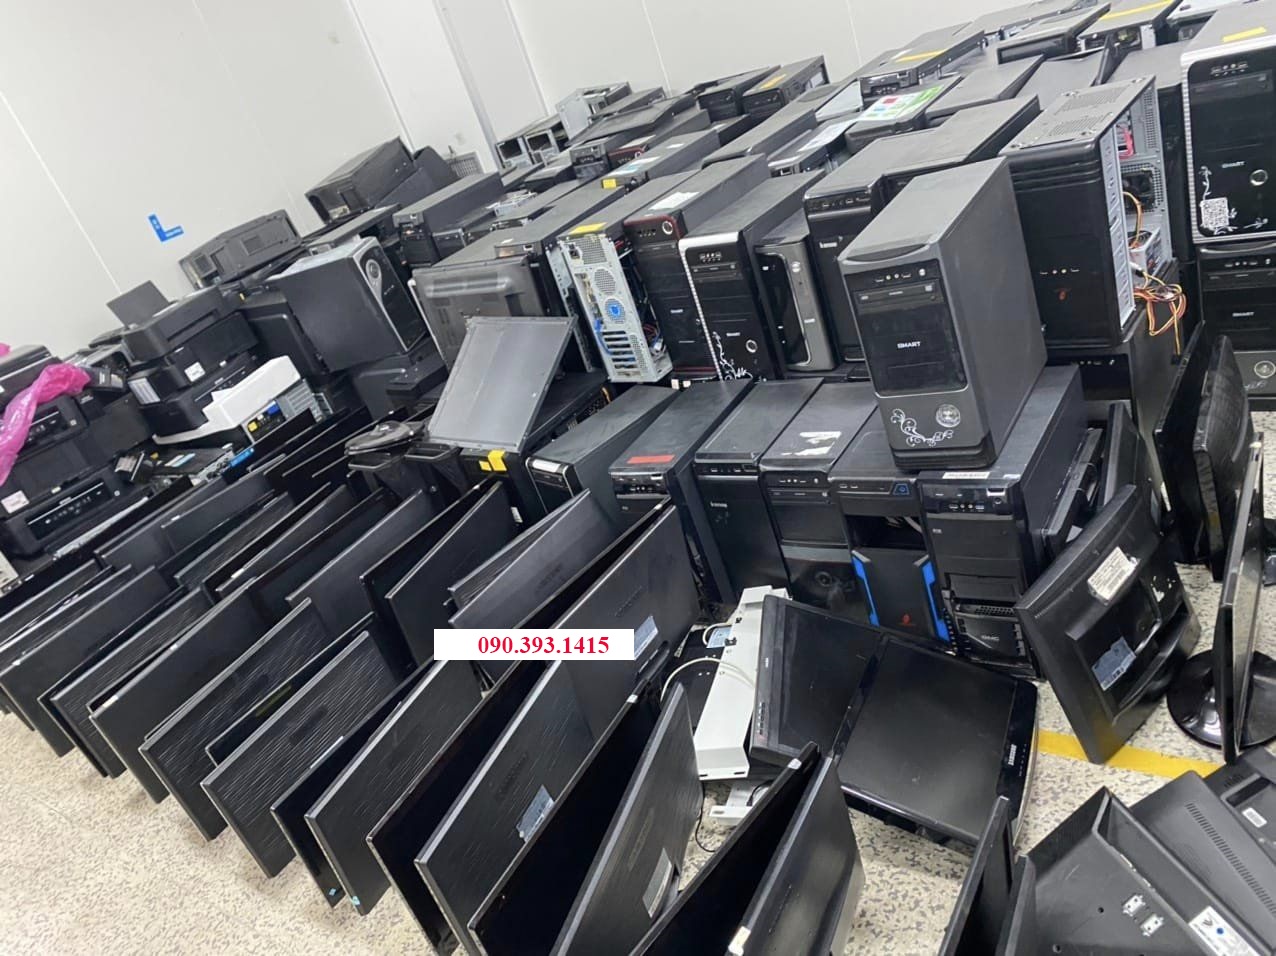 Thu mua máy tính cũ giá tốt tại Hồ Chí Minh